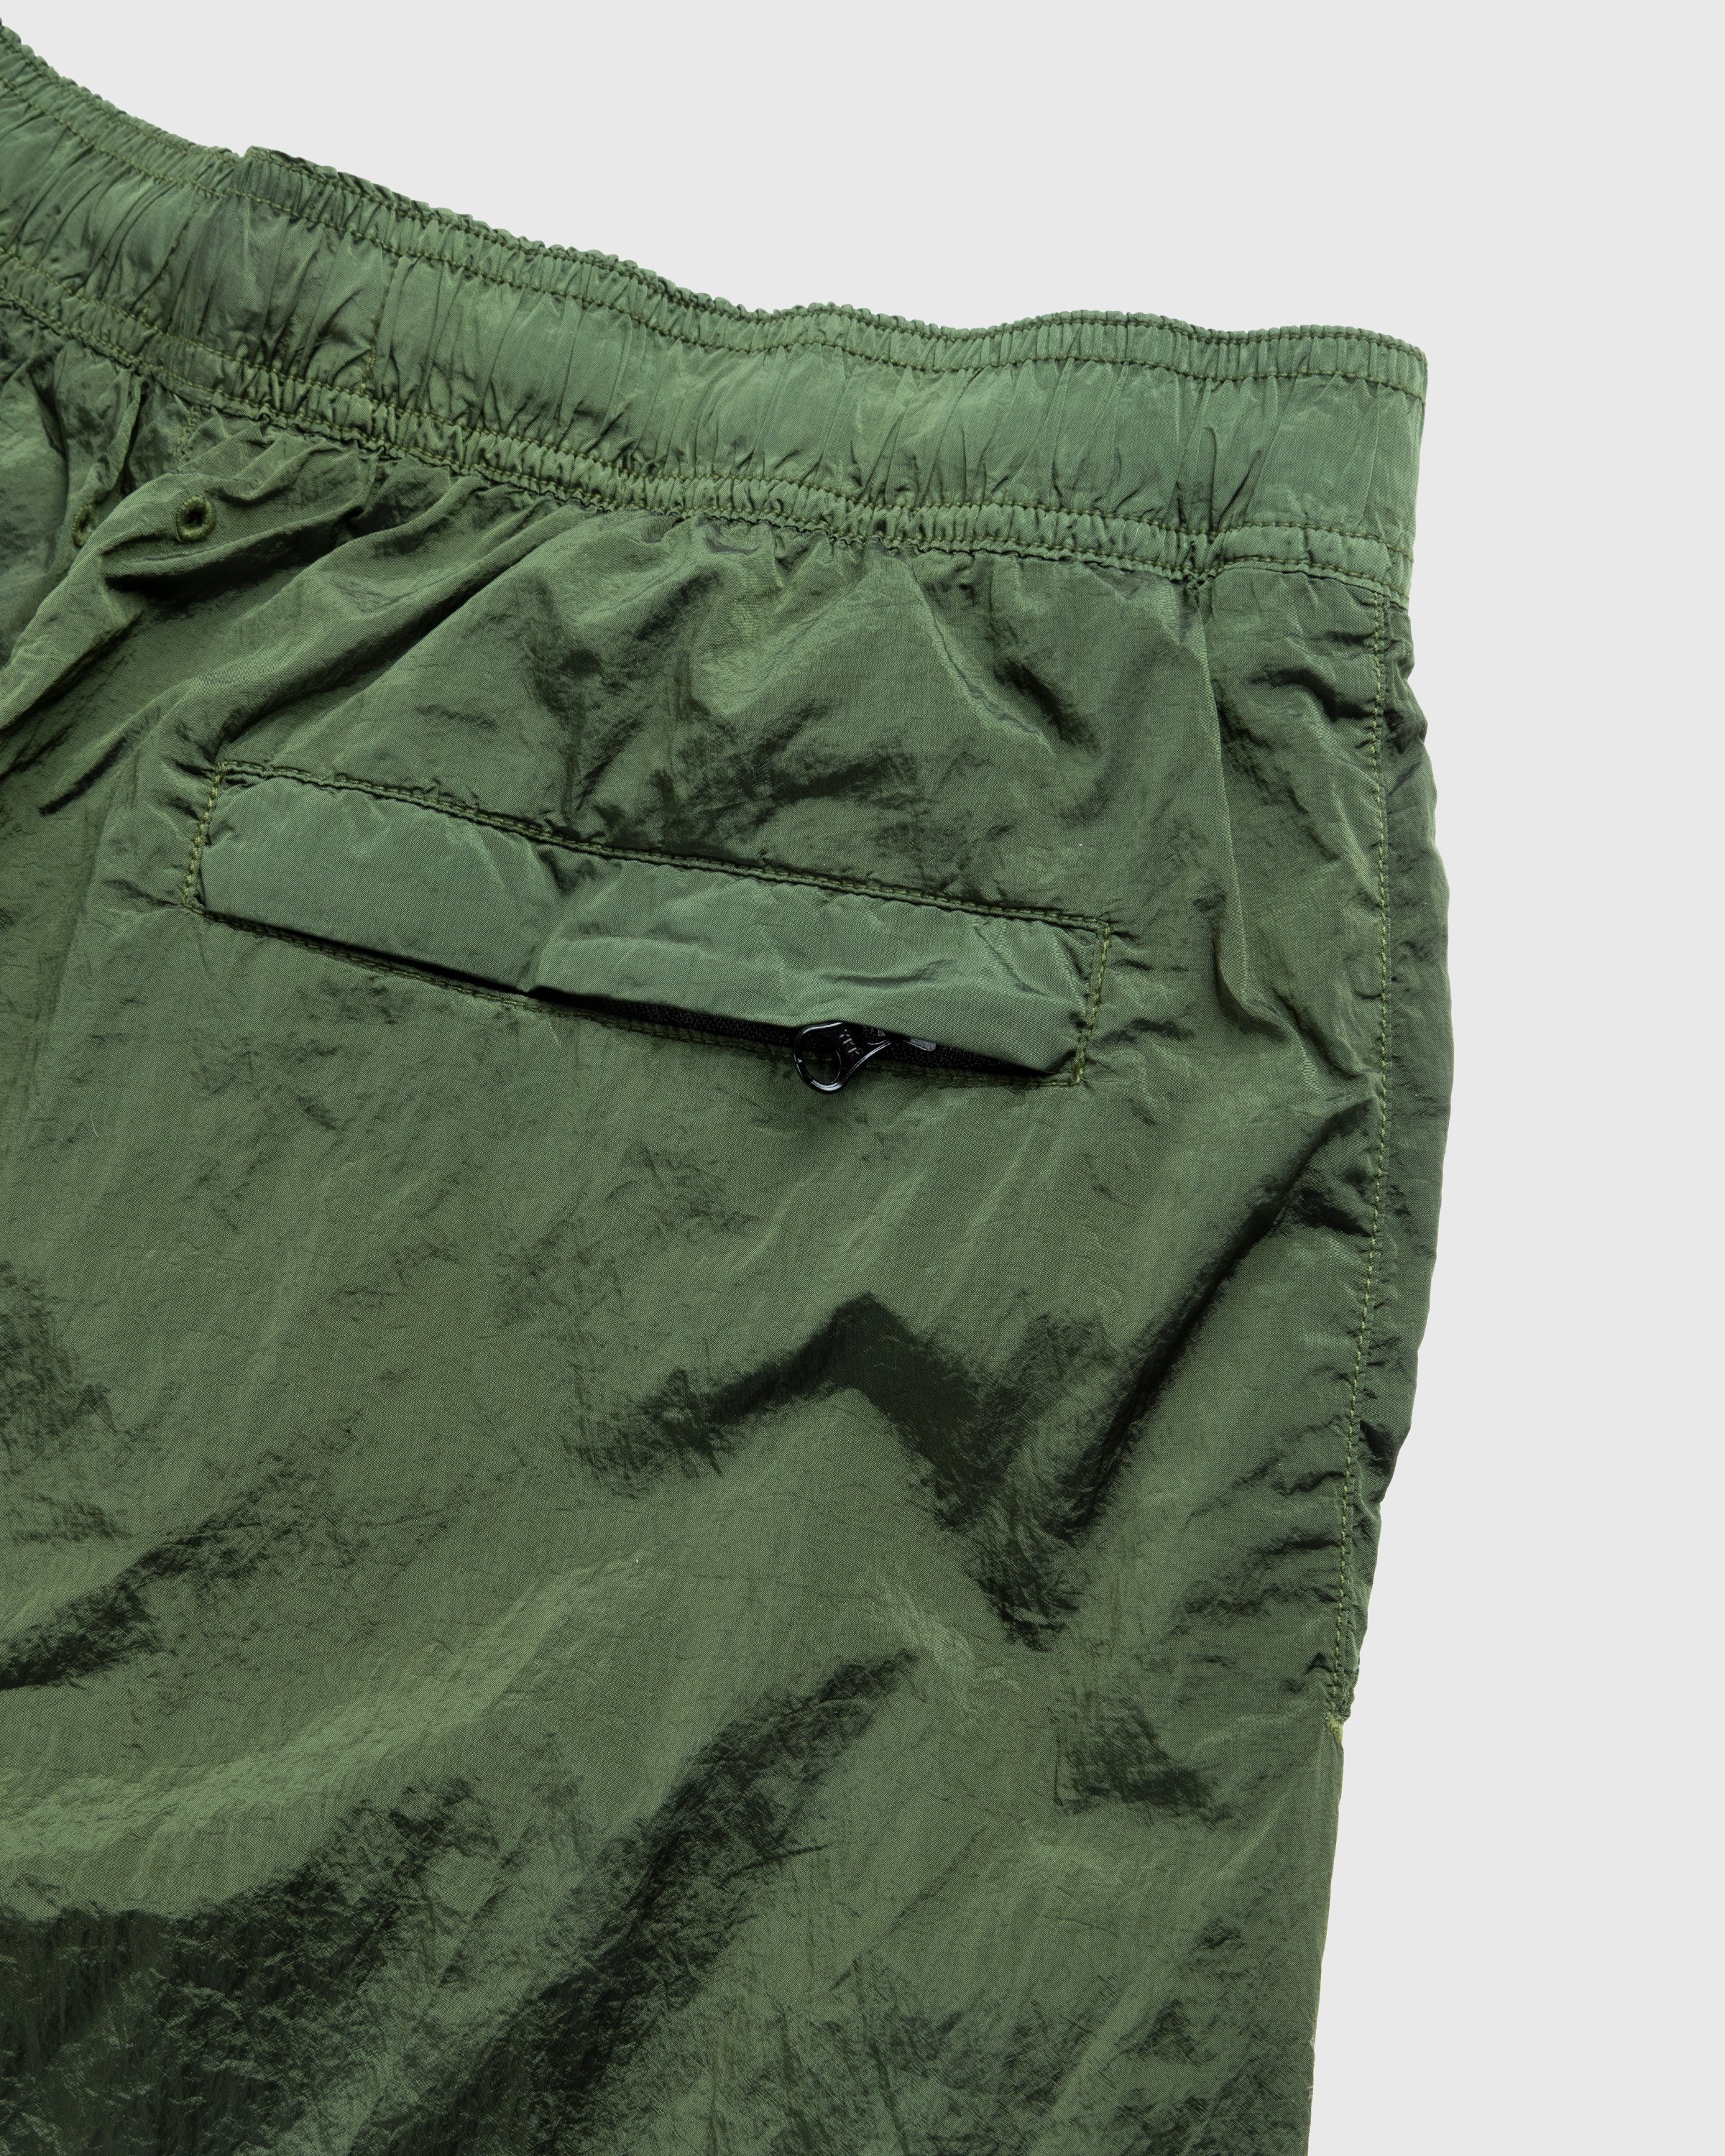 Stone Island - Nylon Metal Swim Shorts Olive - Clothing - Green - Image 3